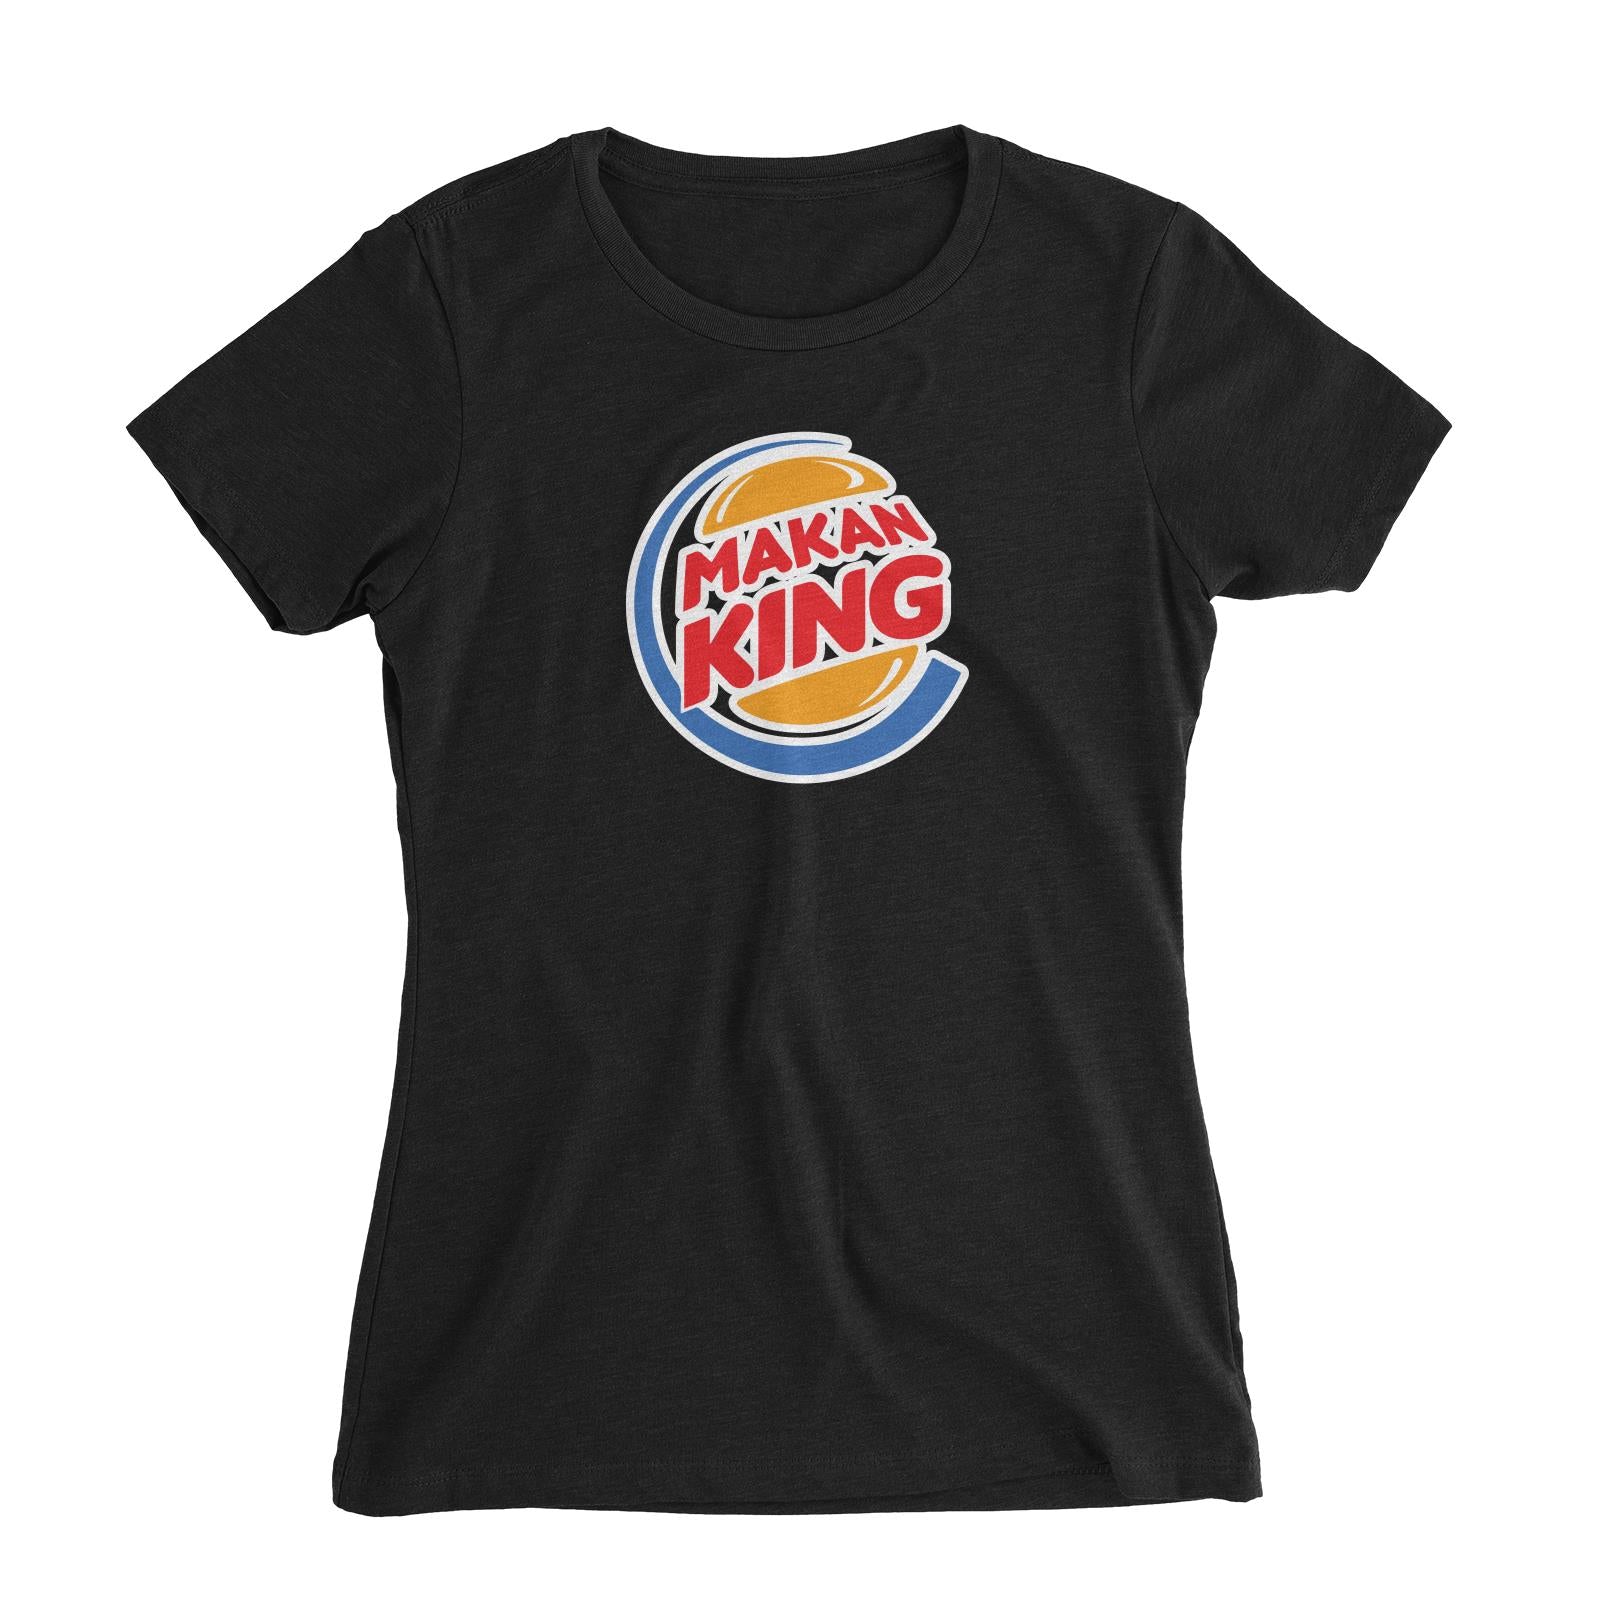 Slang Statement Makan King Women's Slim Fit T-Shirt